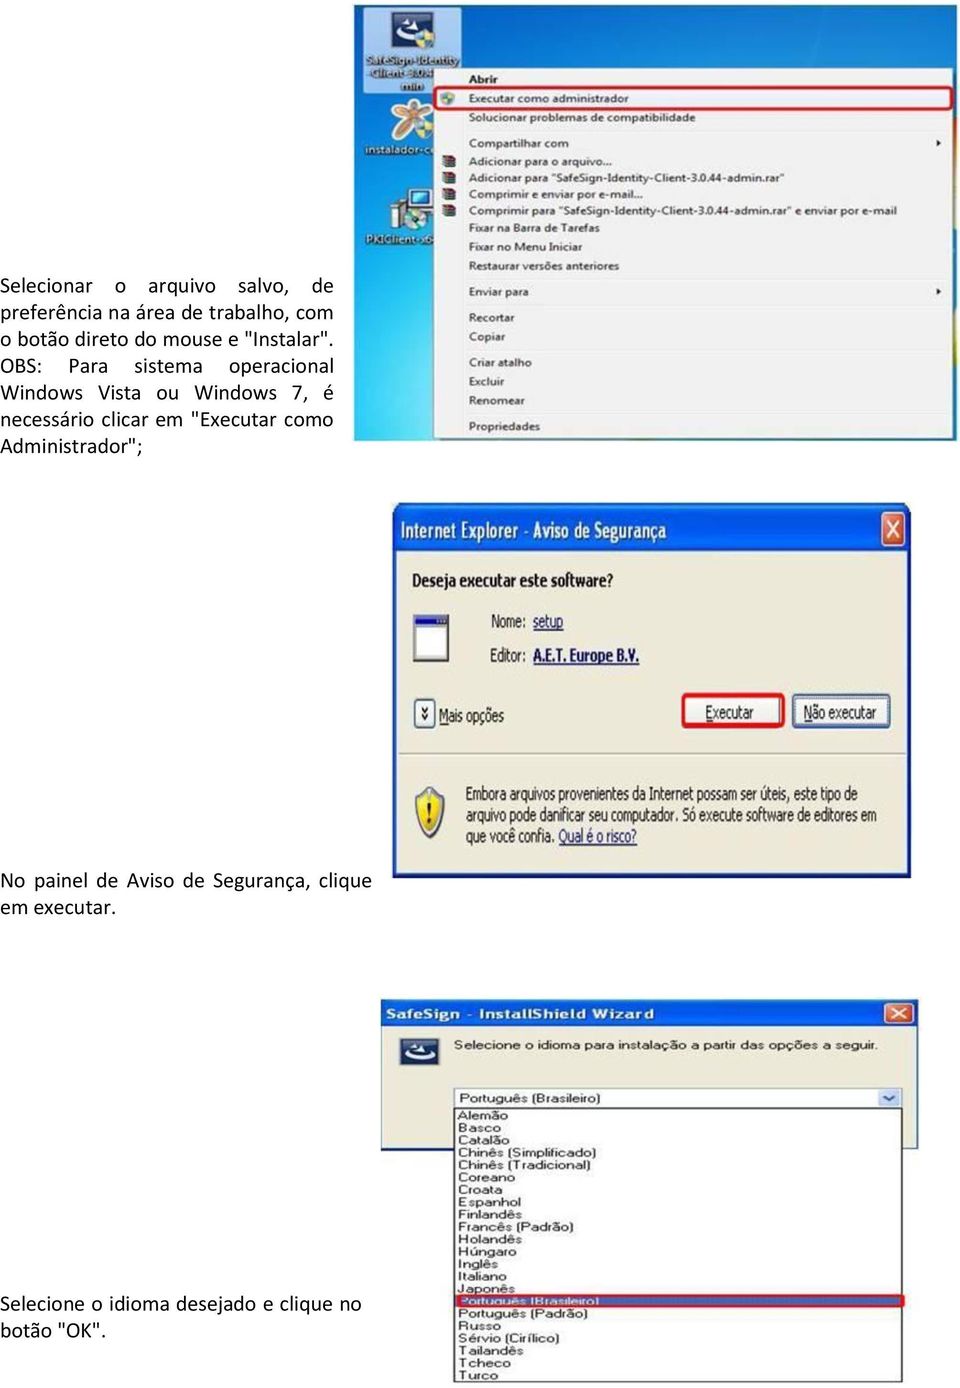 OBS: Para sistema operacional Windows Vista ou Windows 7, é necessário clicar em